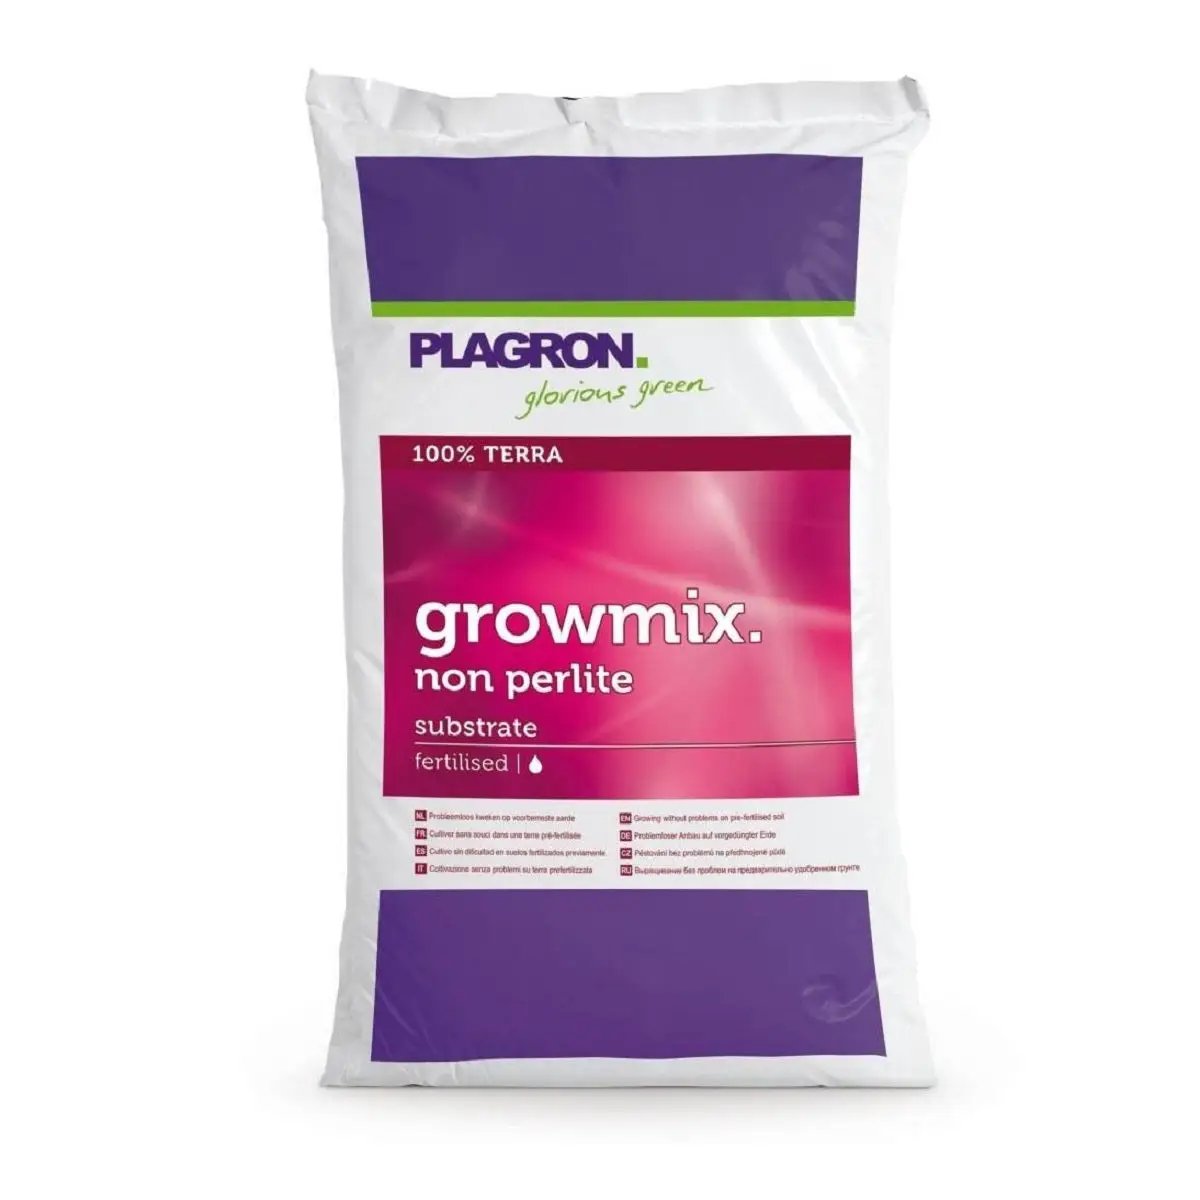 Le substrat pour croissance Plagron Growmix